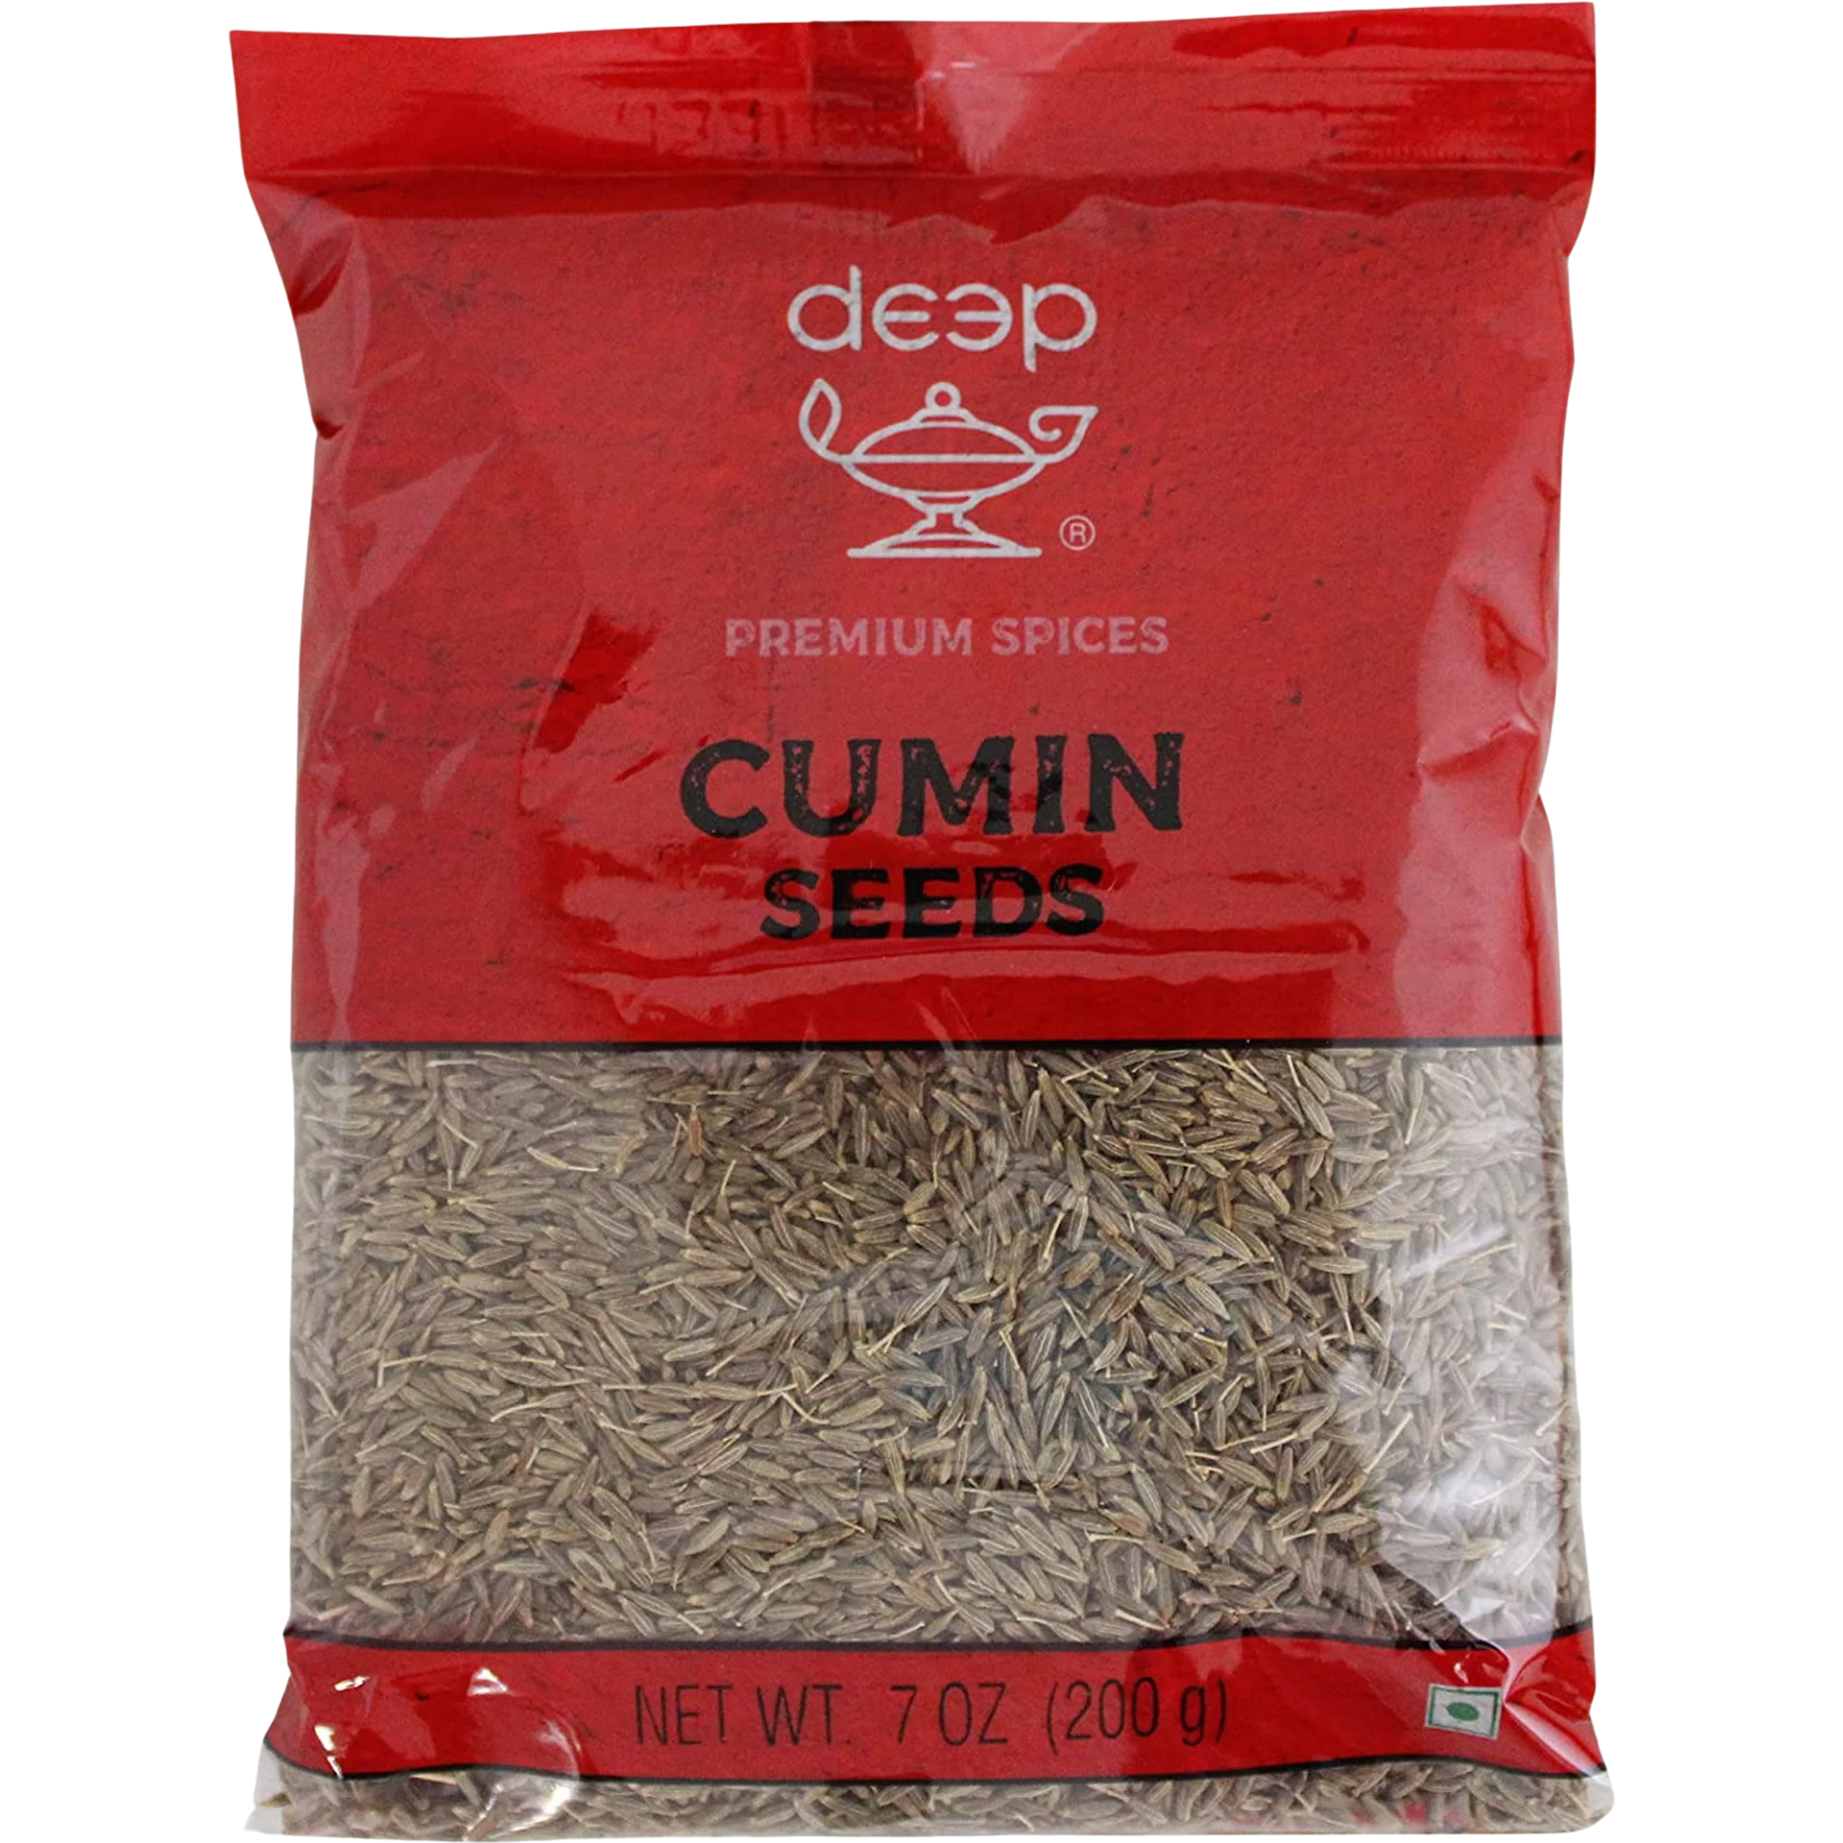 Pack of 3 - Deep Cumin Seeds - 200 Gm (7 Oz)